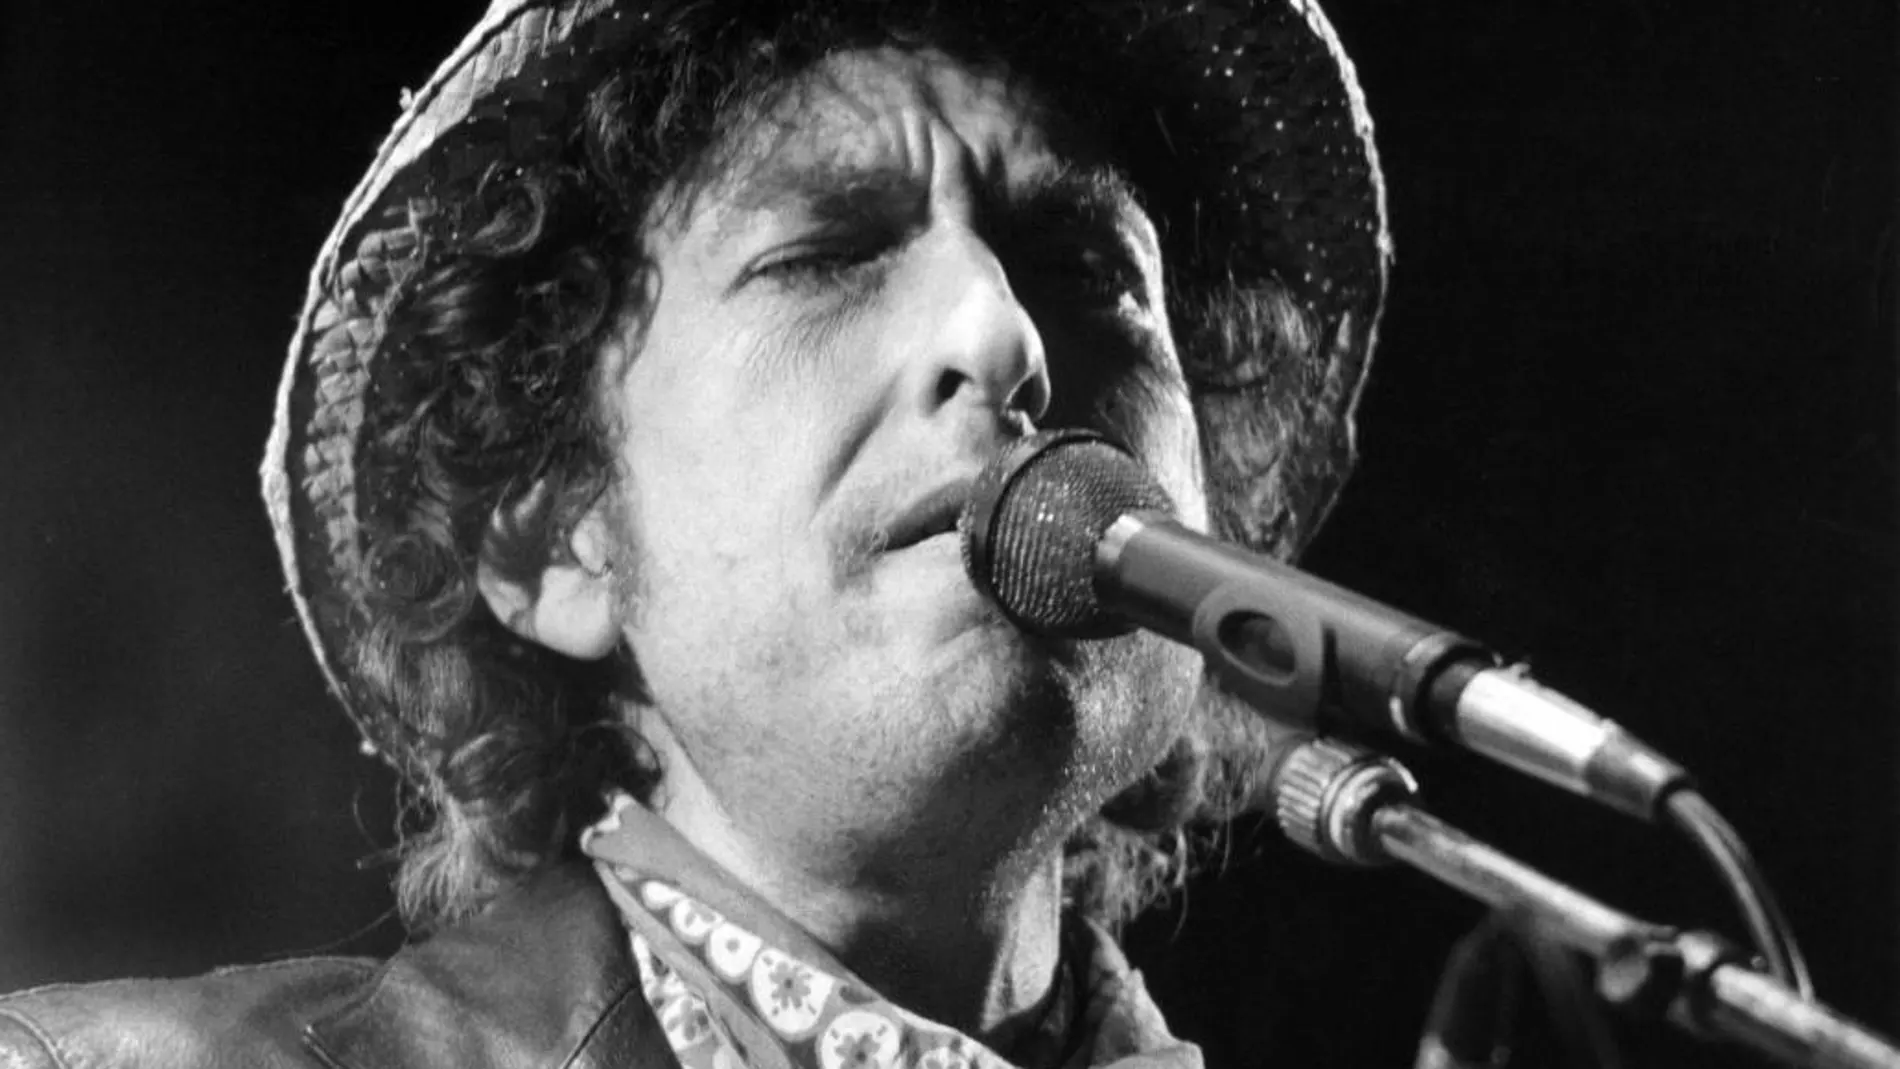 Fotografía de archivo fechada el 3 de junio de 1984 que muestra al cantautor estadounidense Bod Dylan durante un concierto que ofreció en el estadio Olímpico de Múnich, Alemania